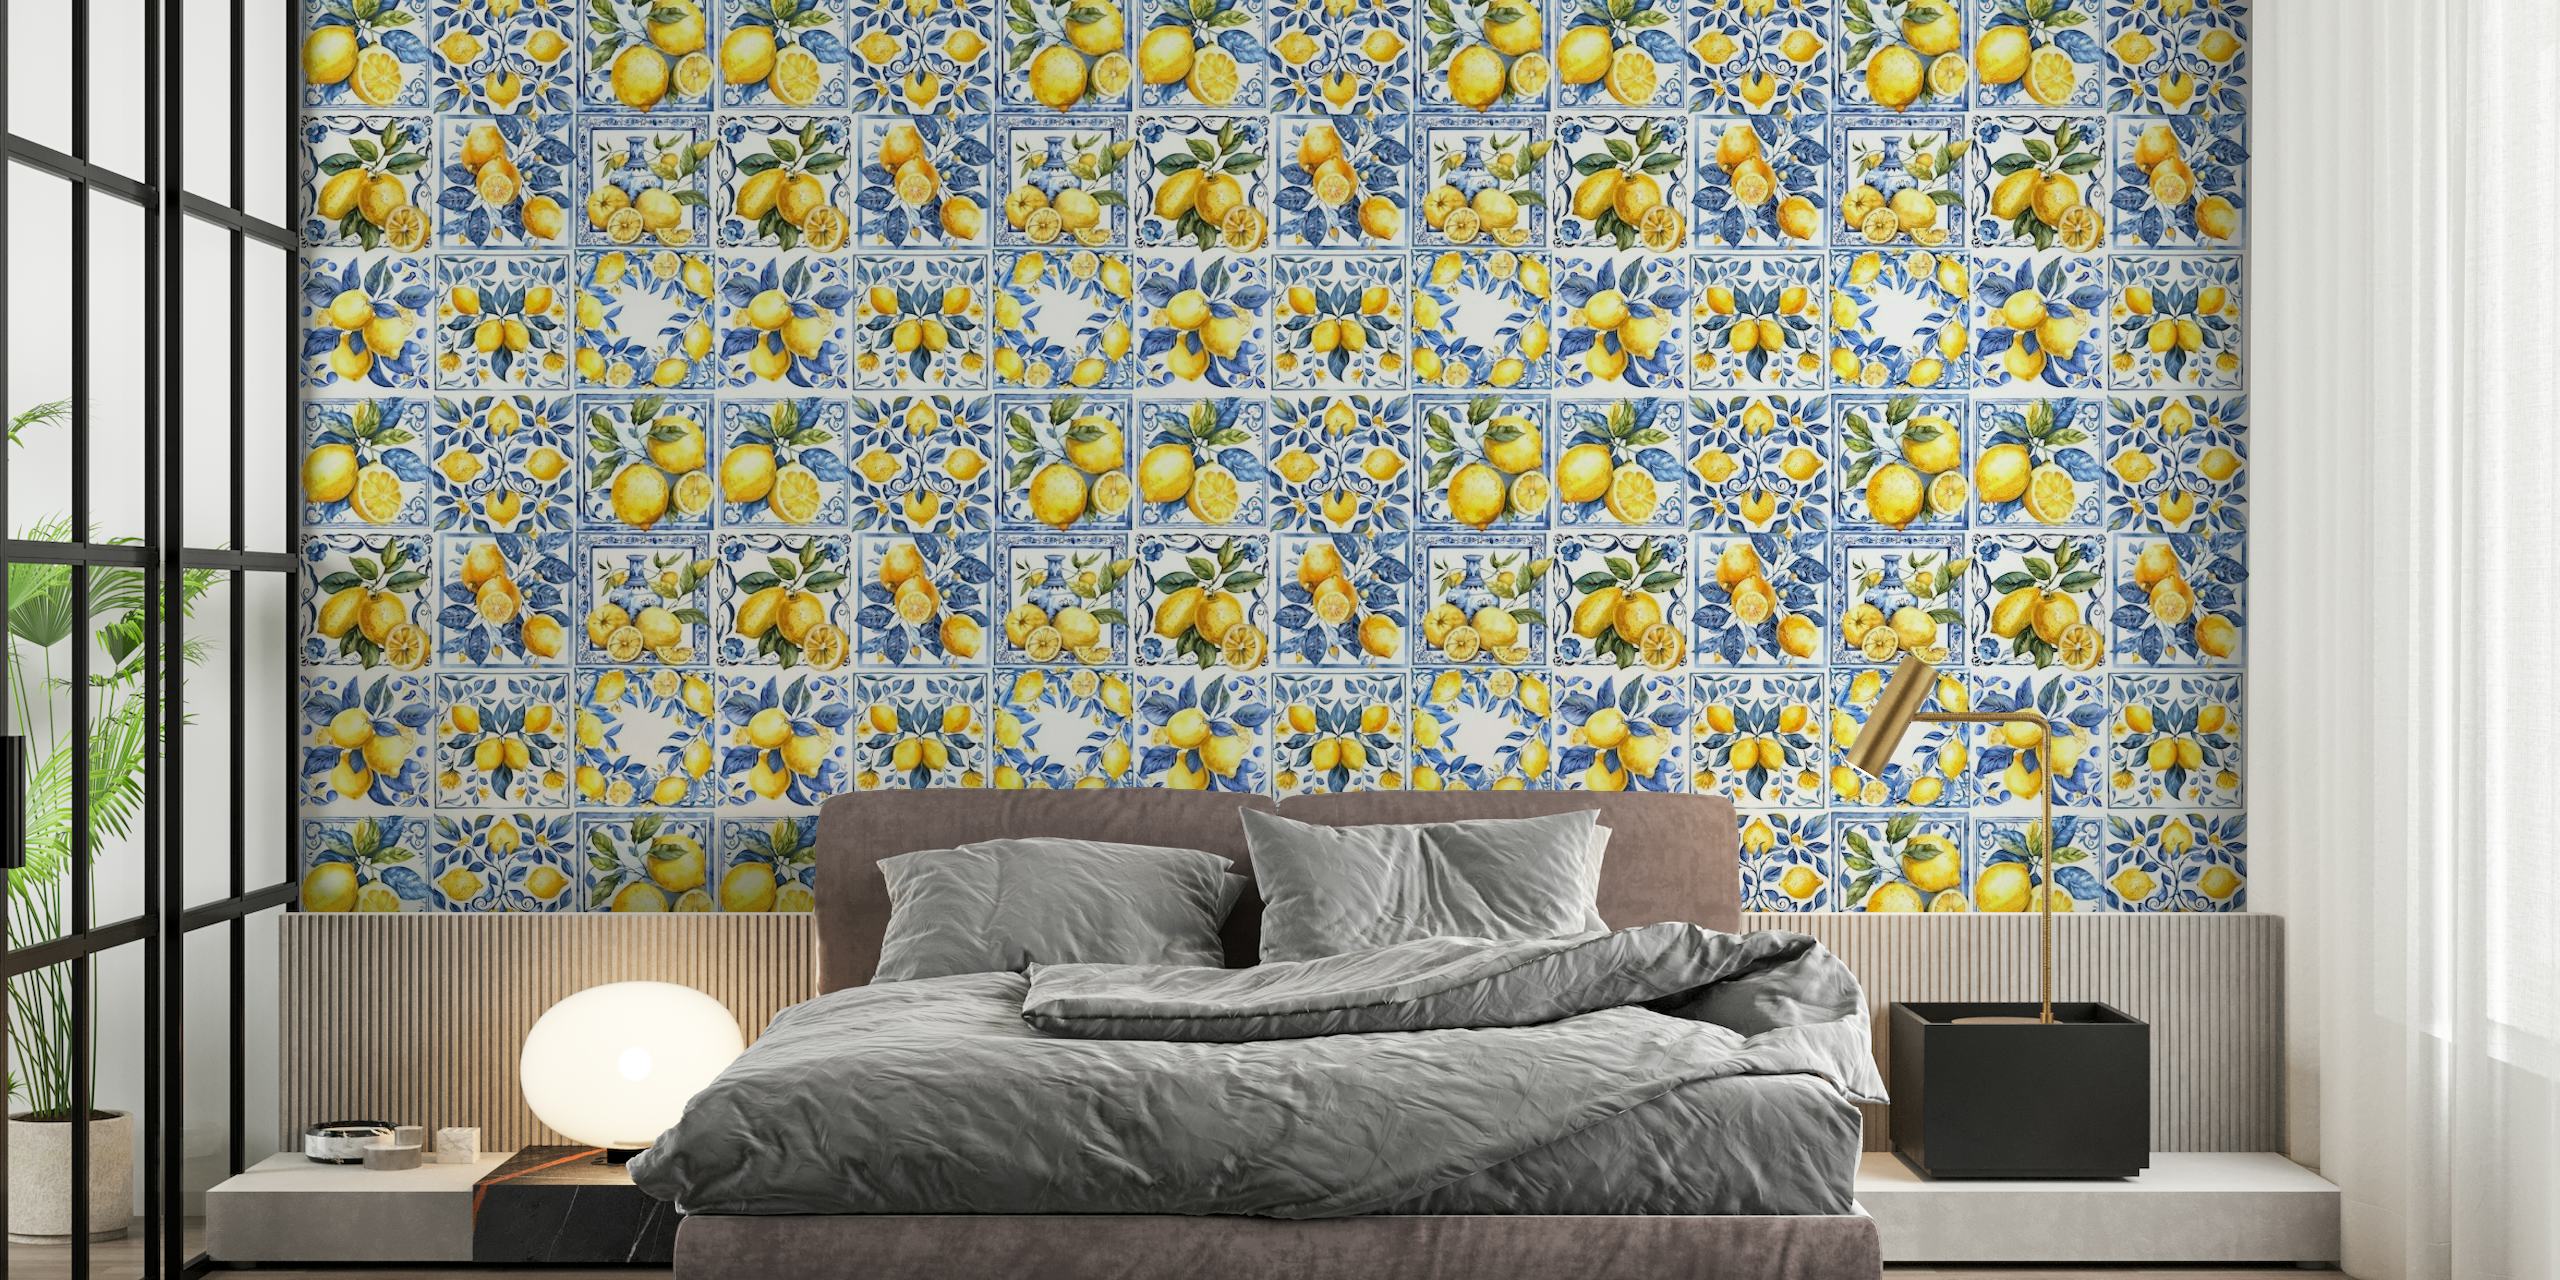 Mediterranean tiles with lemons mural papiers peint